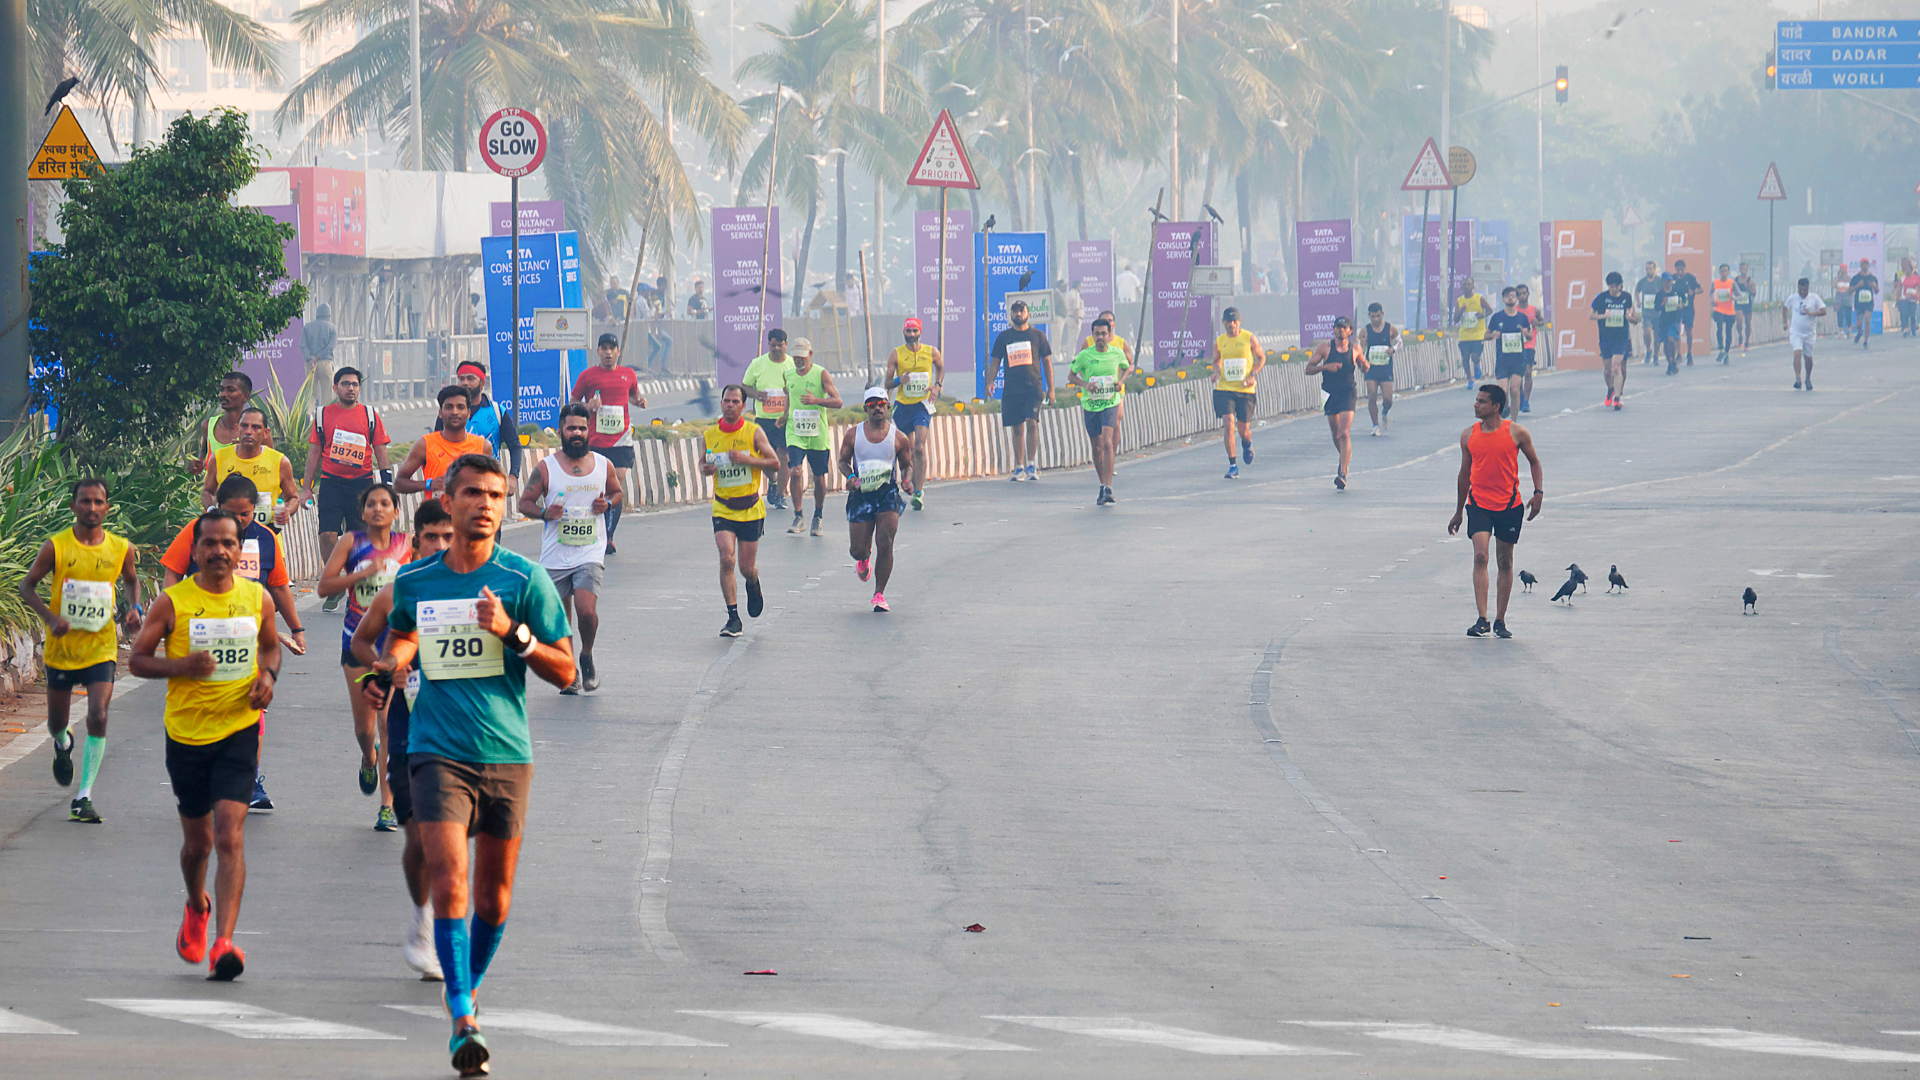 Marathons in India